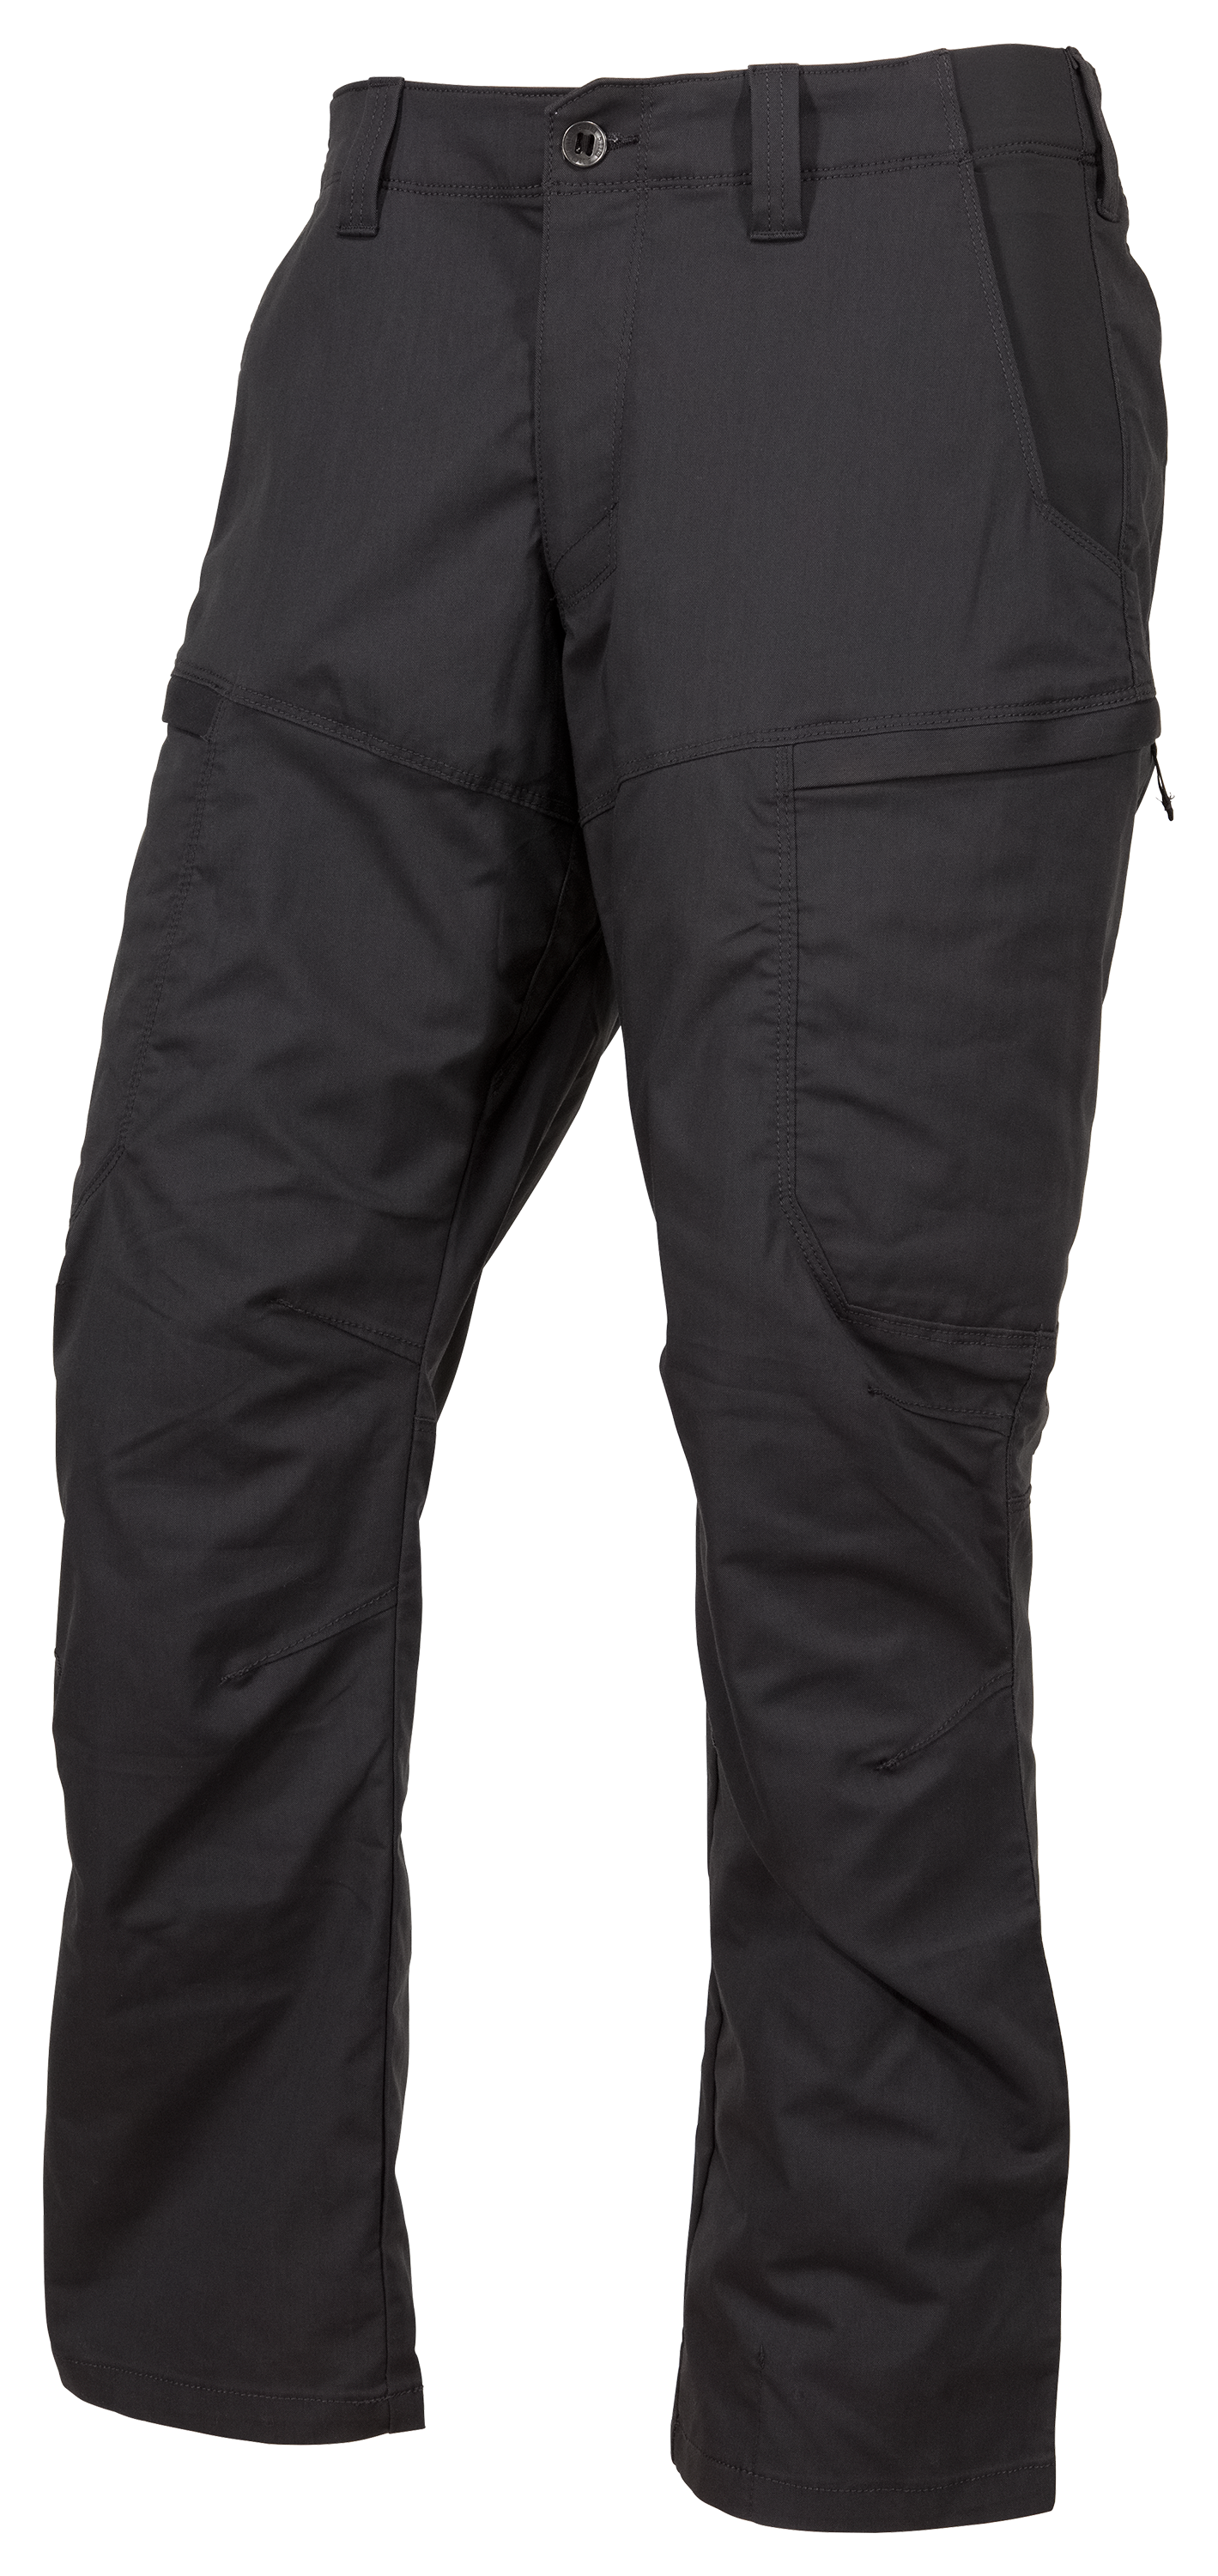 5.11 Tactical Apex Pants for Men | Bass Pro Shops